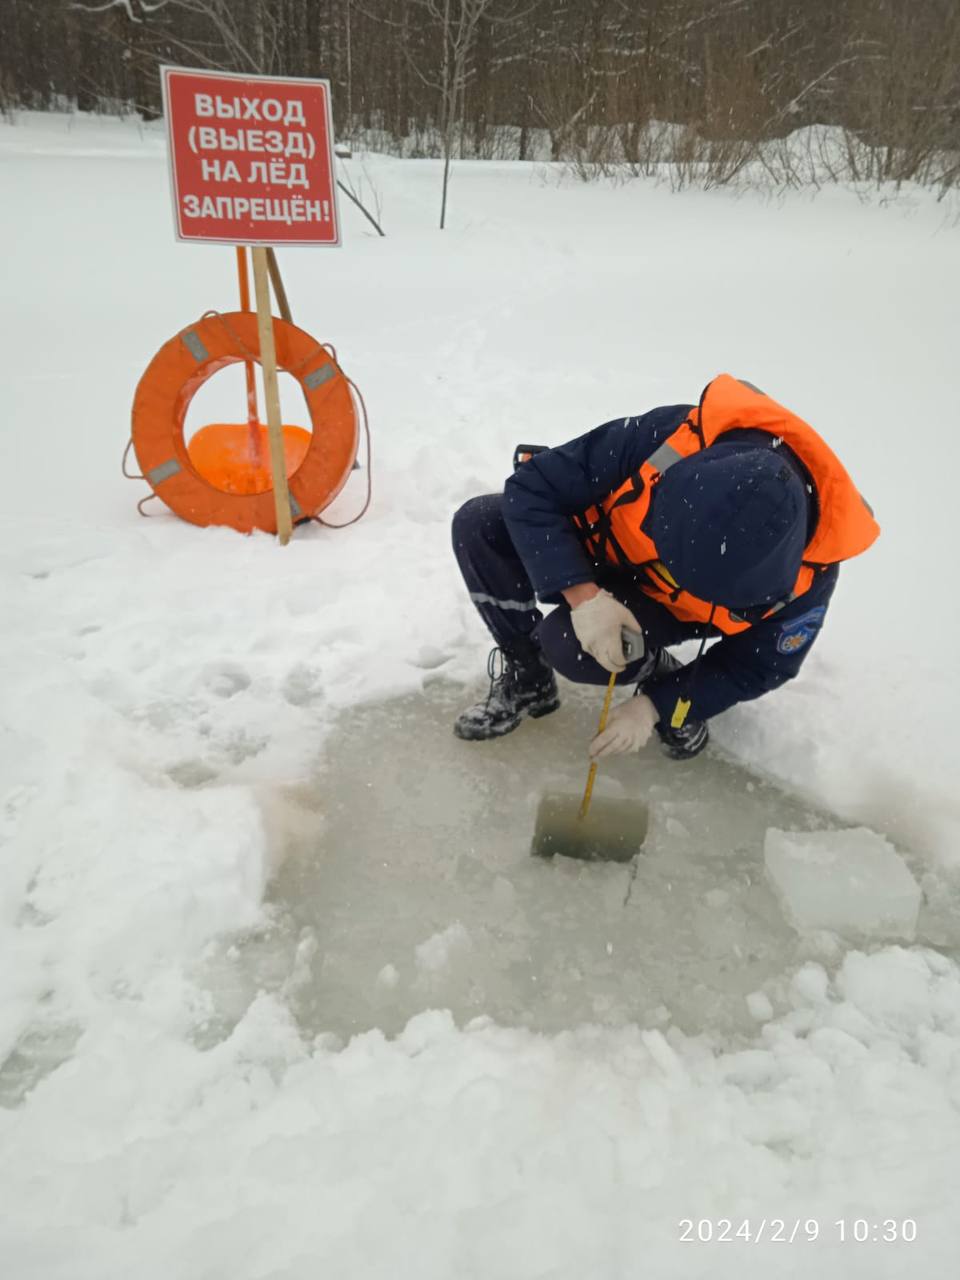 Спасатели Мособлпожспас предупреждают, выход на лед, не достигшей безопасной толщины, запрещён